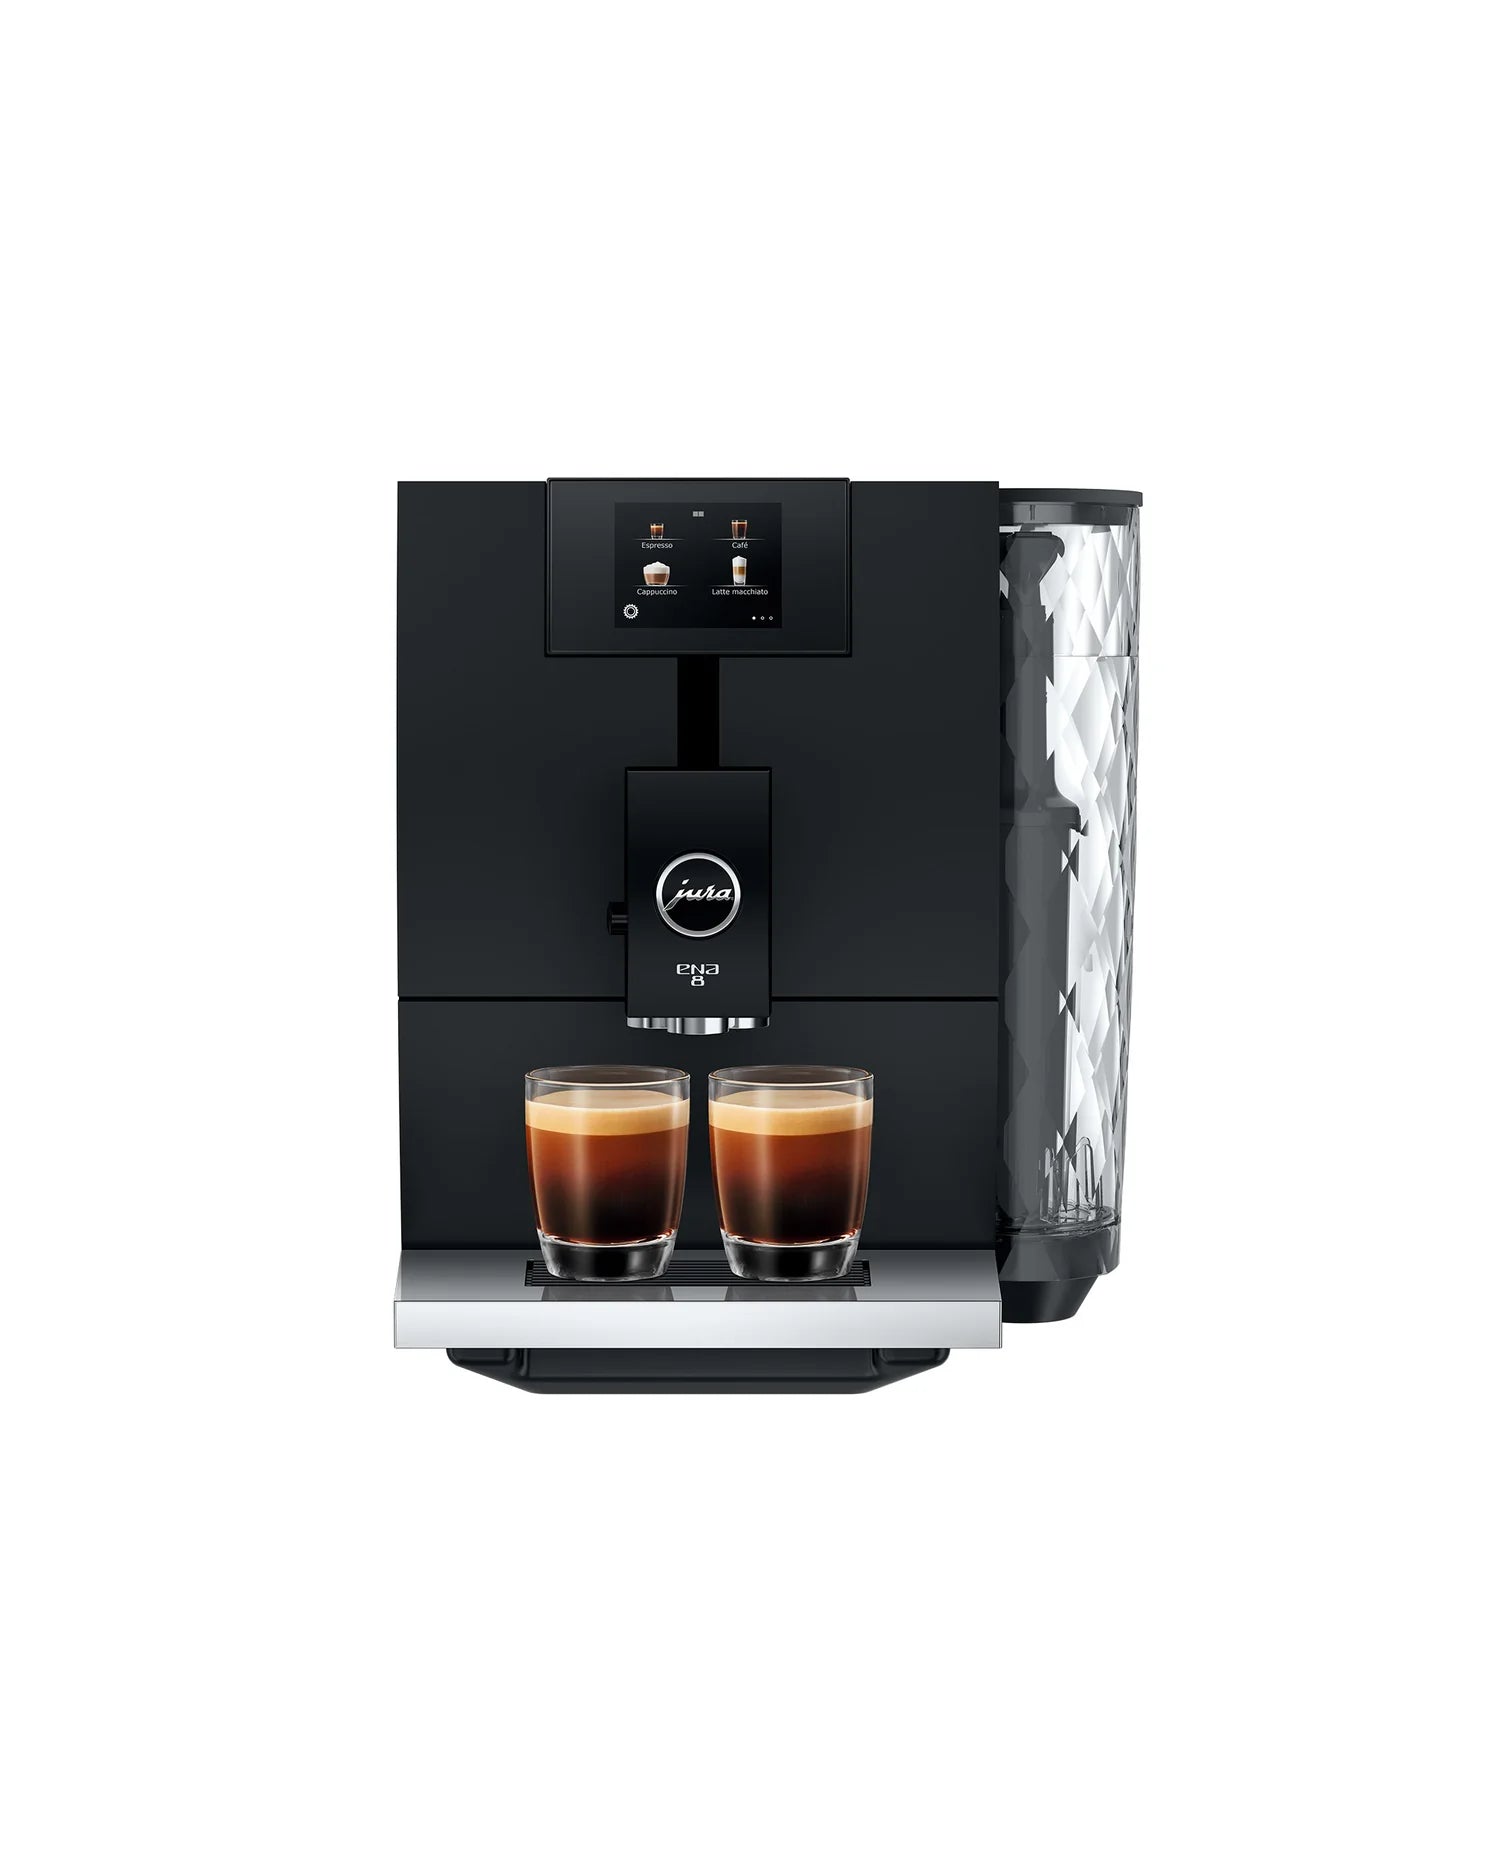 Machine à café automatique professionnelle à grains Jura WE8